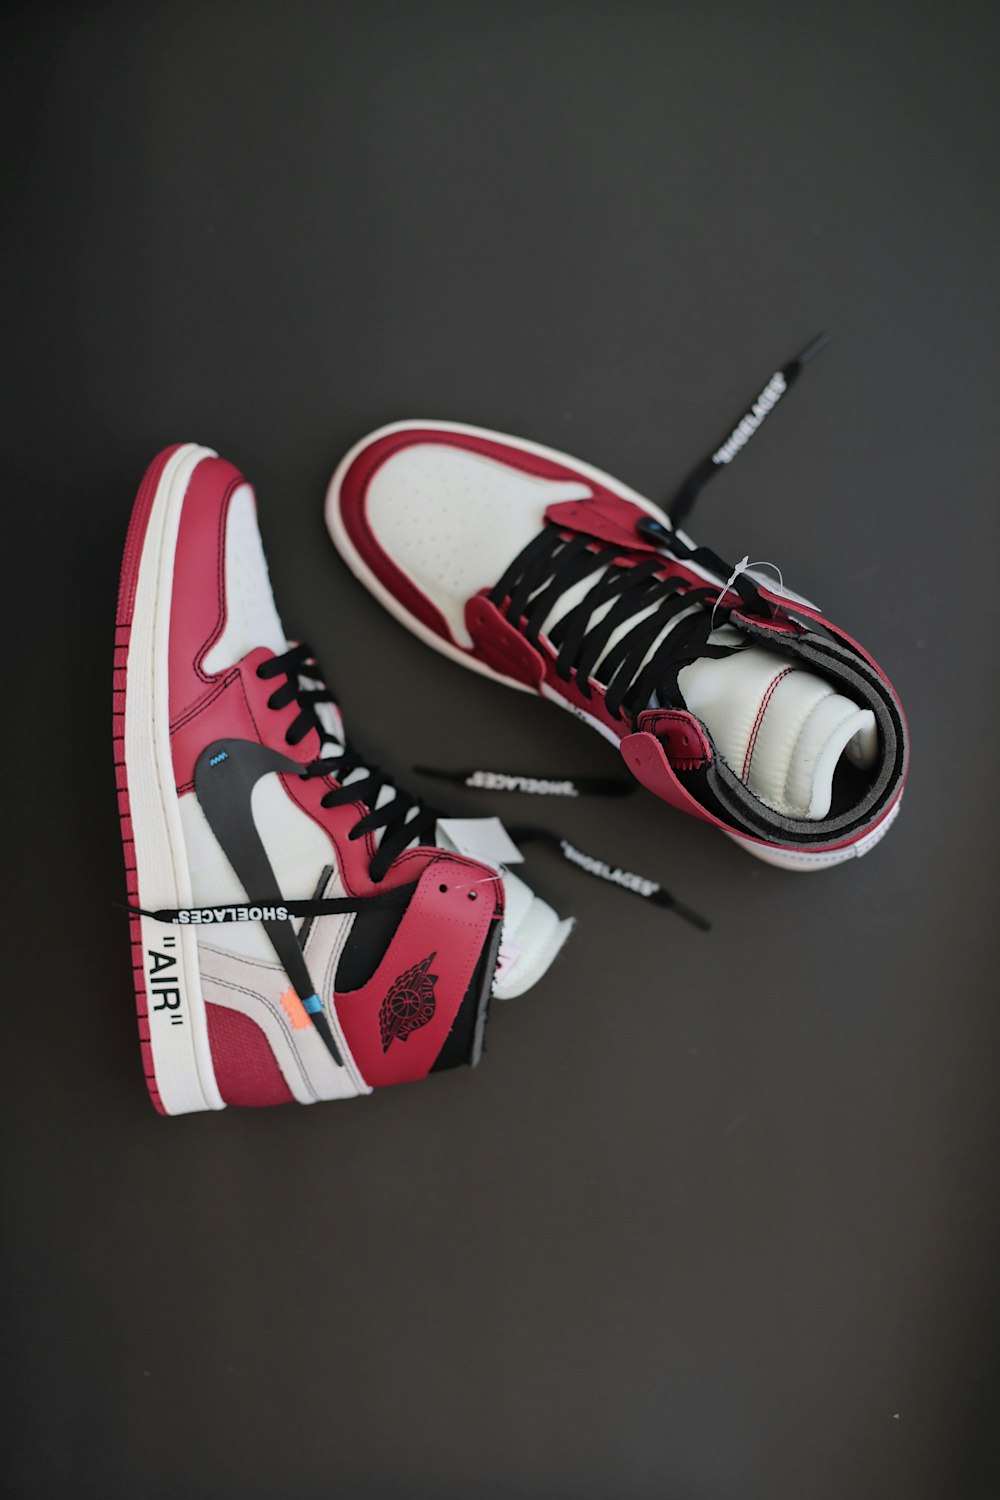 Foto par de tênis Nike Air Jordan vermelho-branco e preto – Imagem de Roupa  grátis no Unsplash